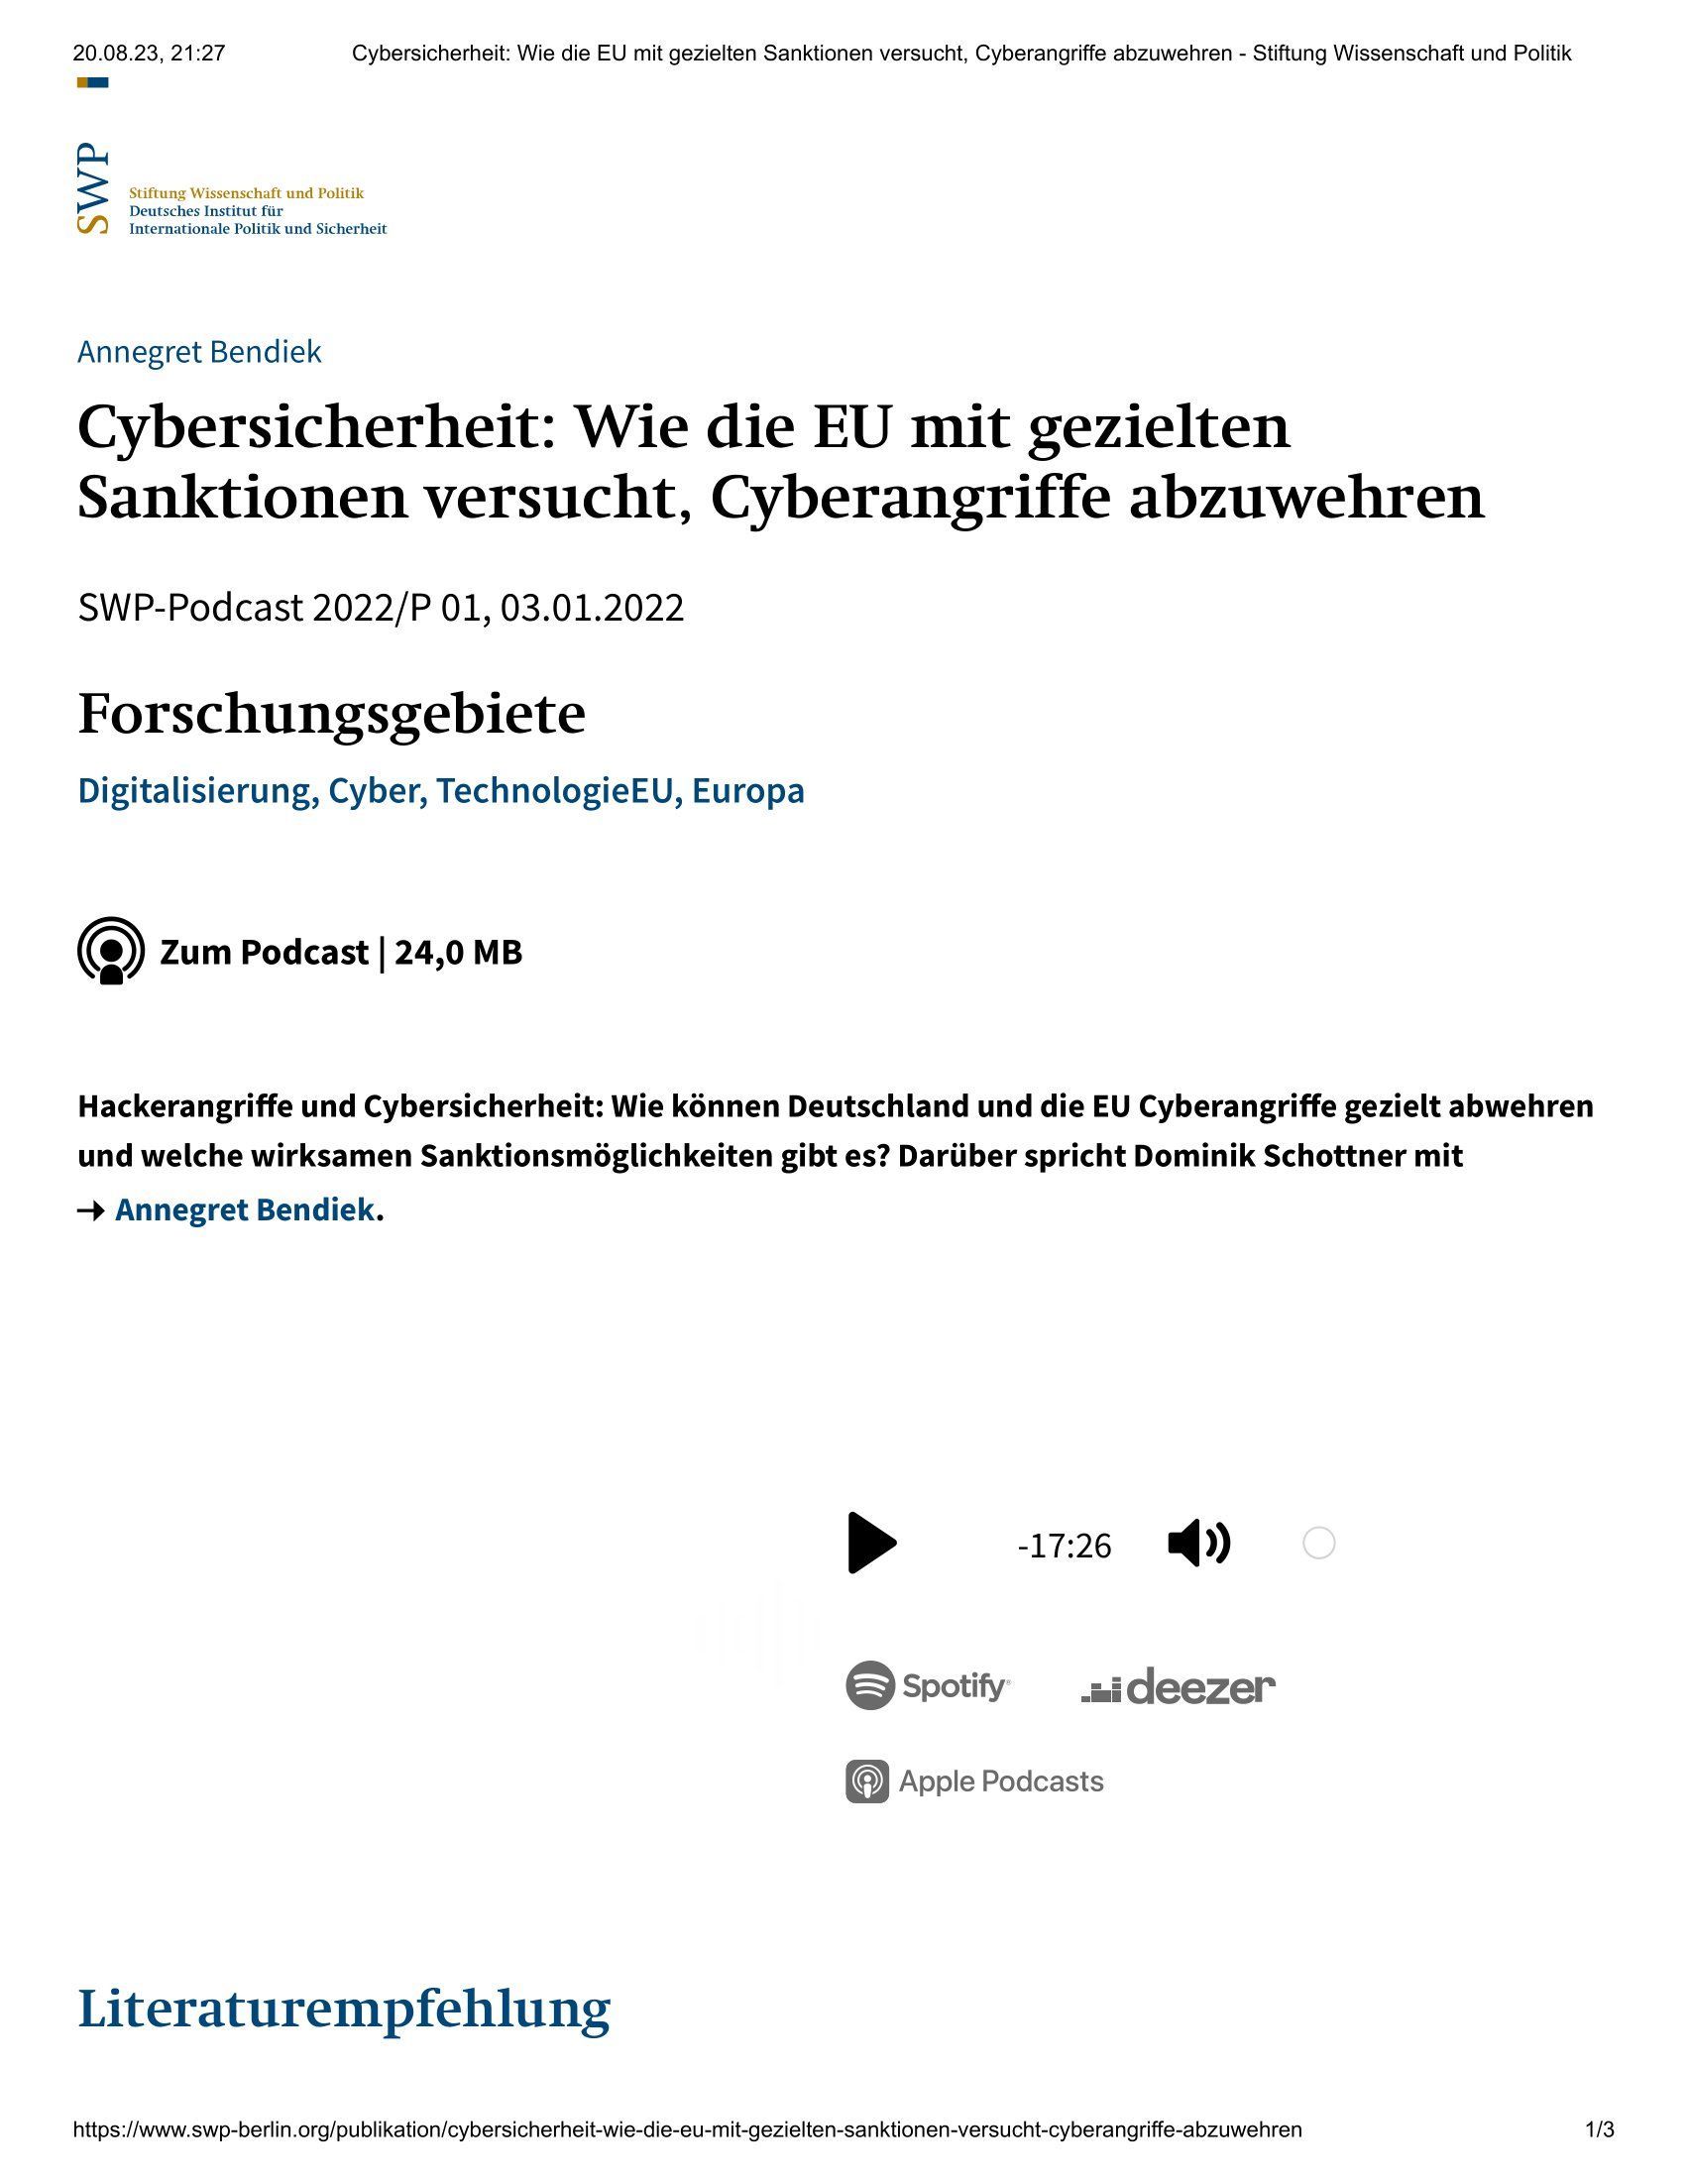 Cybersicherheit: Wie die EU mit gezielten Sanktionen versucht, Cyberangriffe abzuwehren